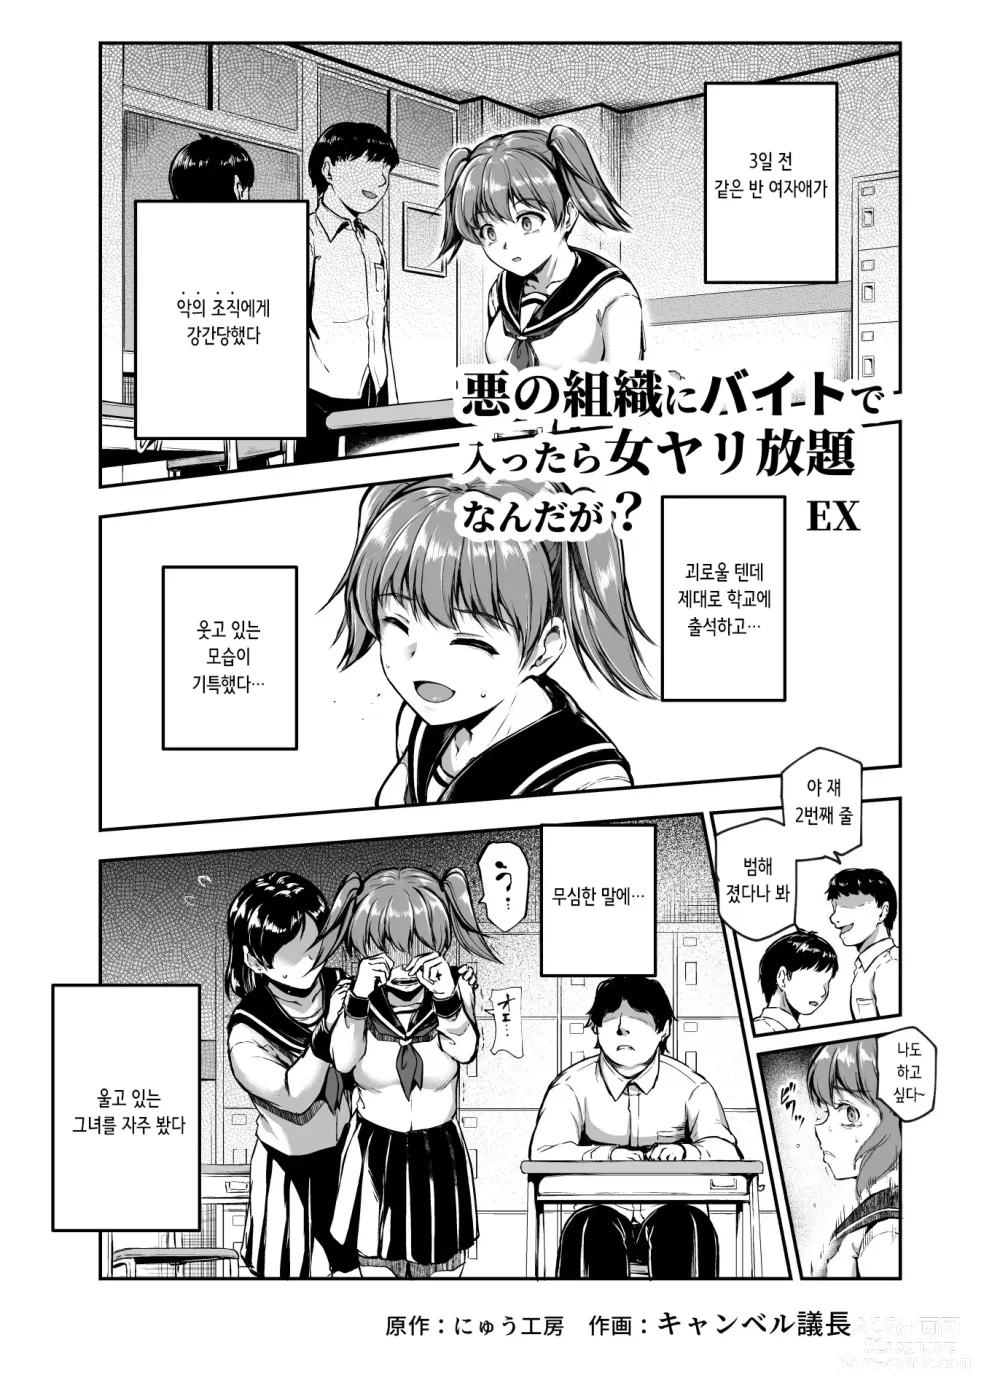 Page 5 of doujinshi 악의 조직에 알바로 들어갔더니 여자 자유이용권인데? EX